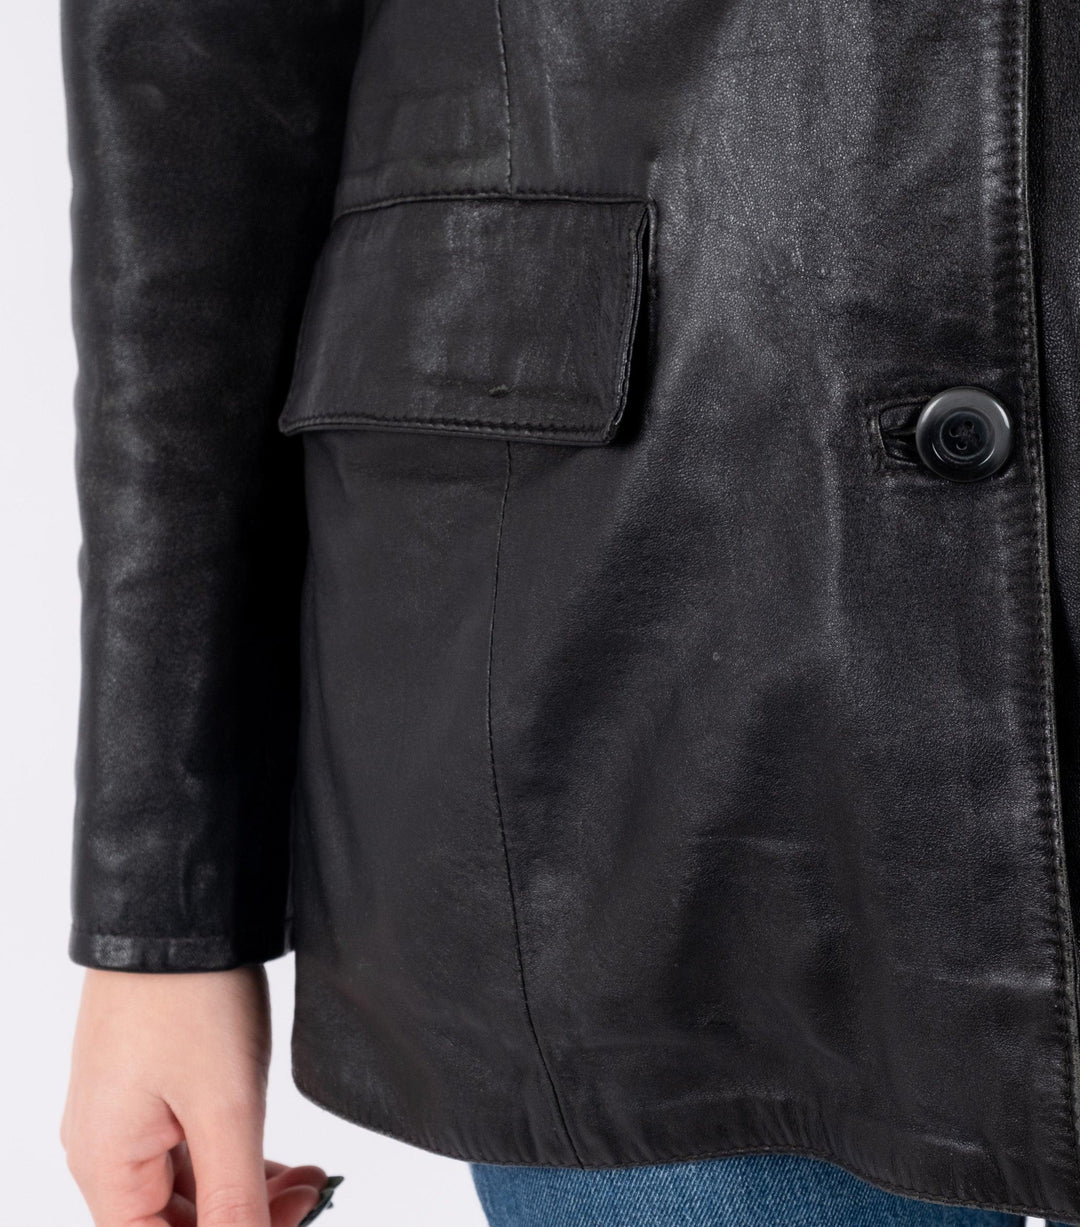 Black Leather Jacket - Volver